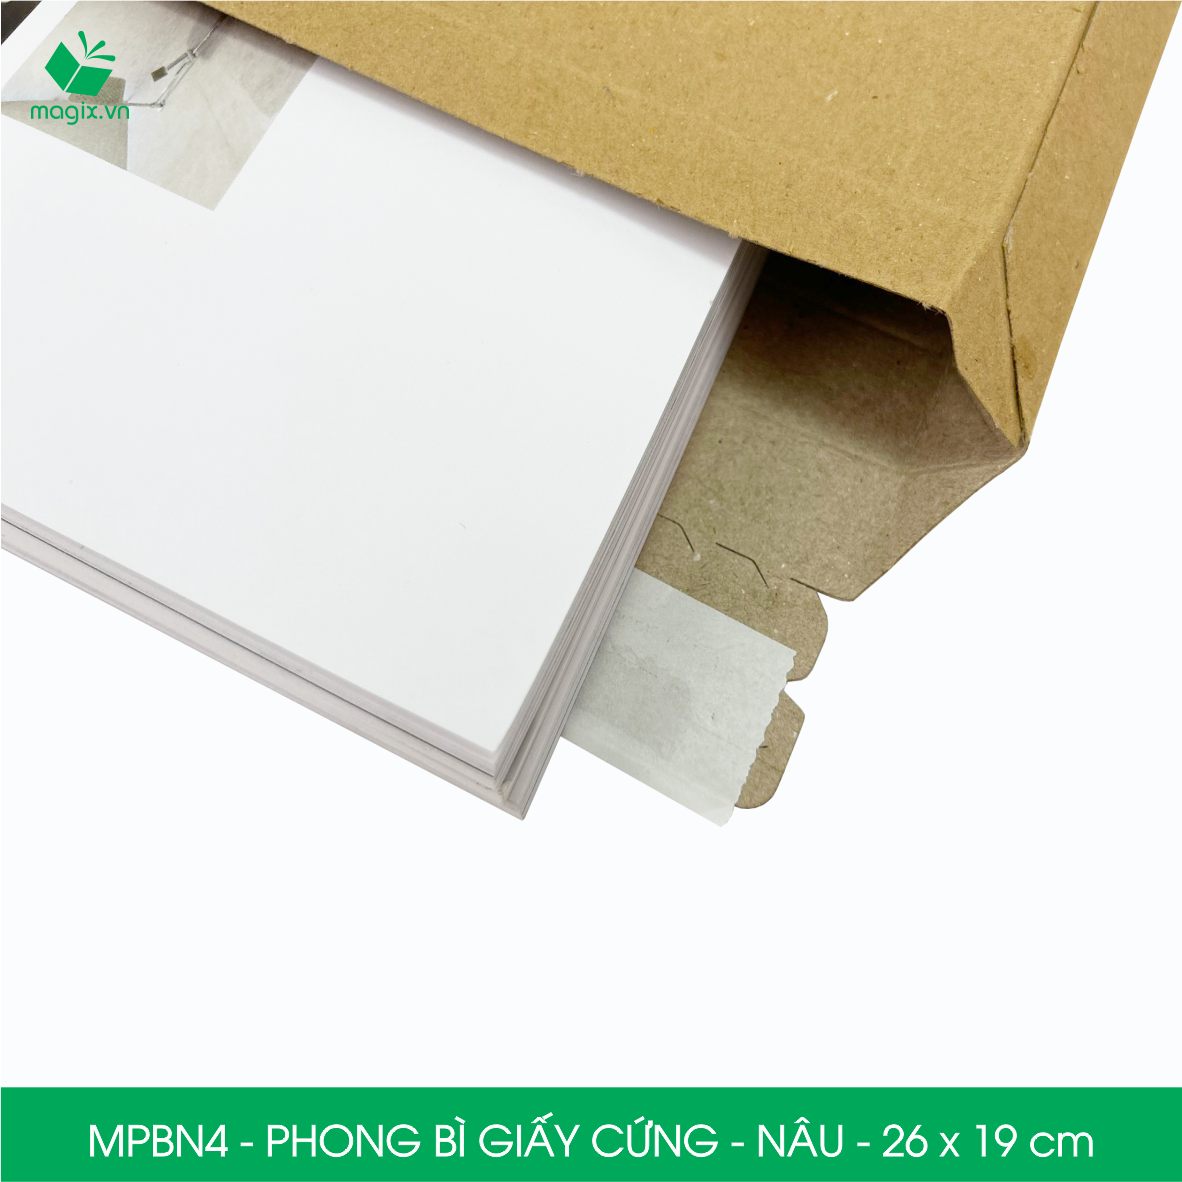 MPBN4 - 26x19 cm - Combo 60 phong bì giấy cứng đóng hàng màu nâu thay thế túi gói hàng